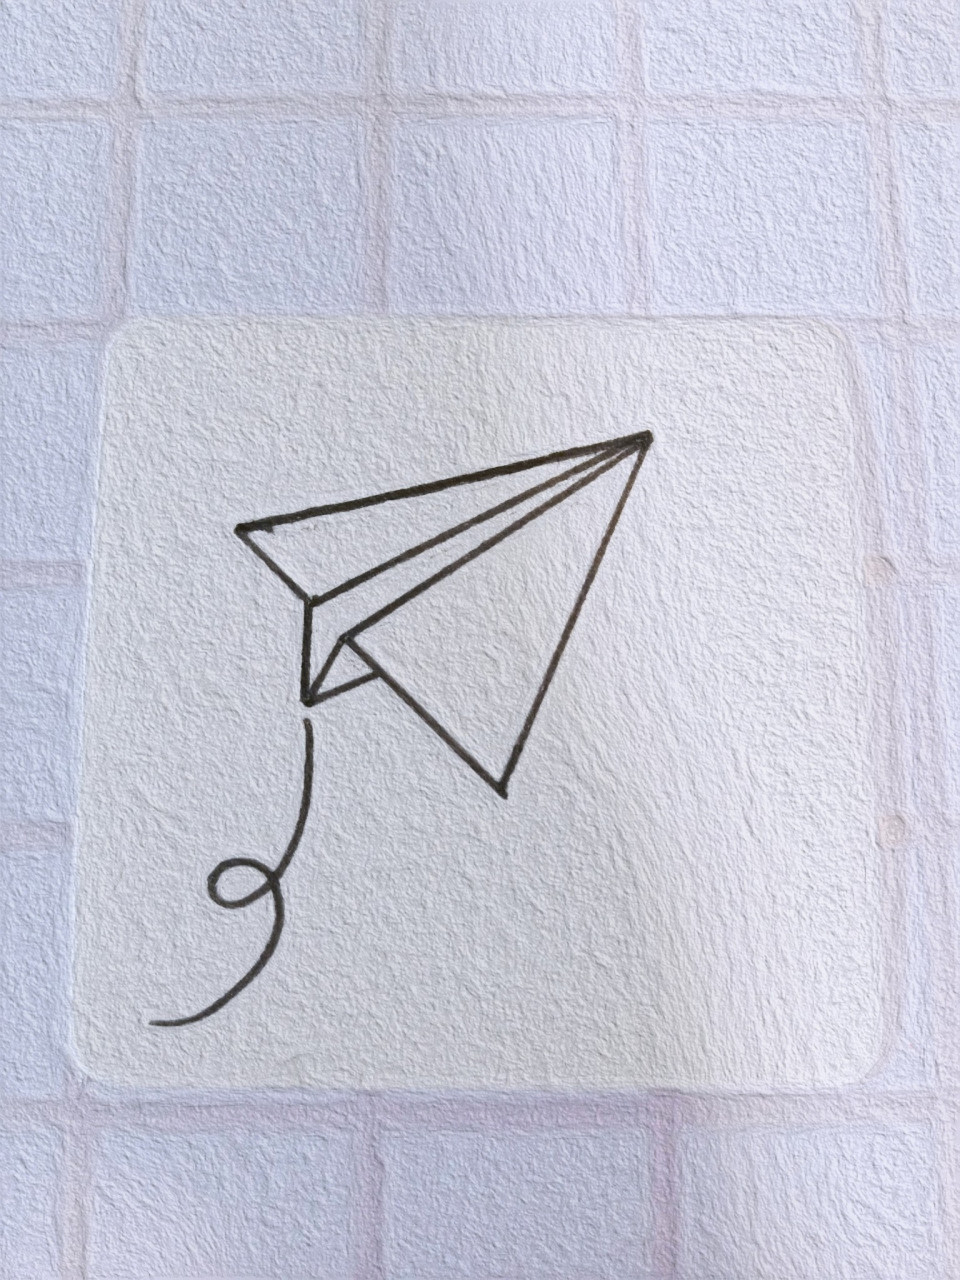 纸飞机最简单的画法图片